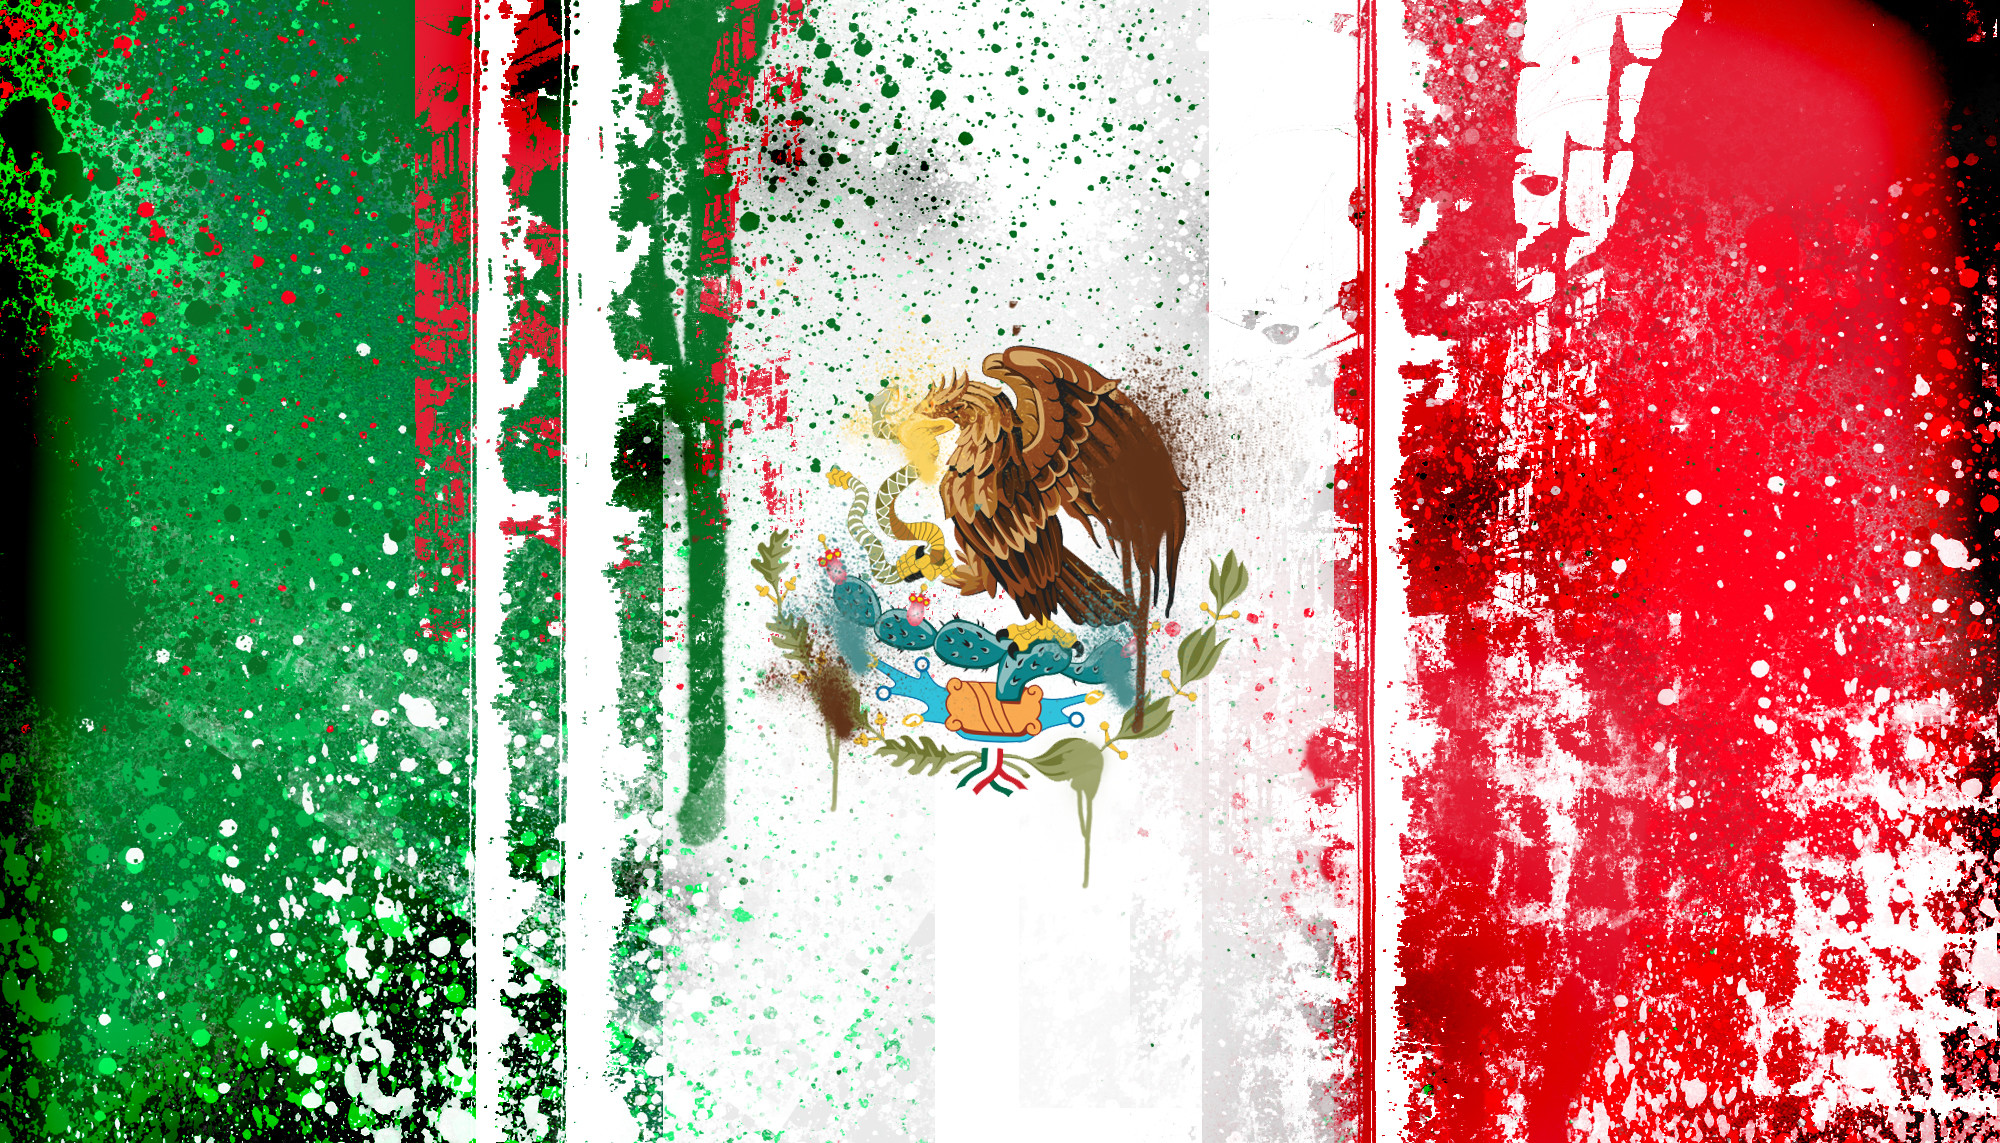 2000x1143 Wallpapers For Cool Mexican Pride Backgrounds 1920x1080. View 0. pintura de  la bandera mexicana fondo de pantalla ForWallpapercom 